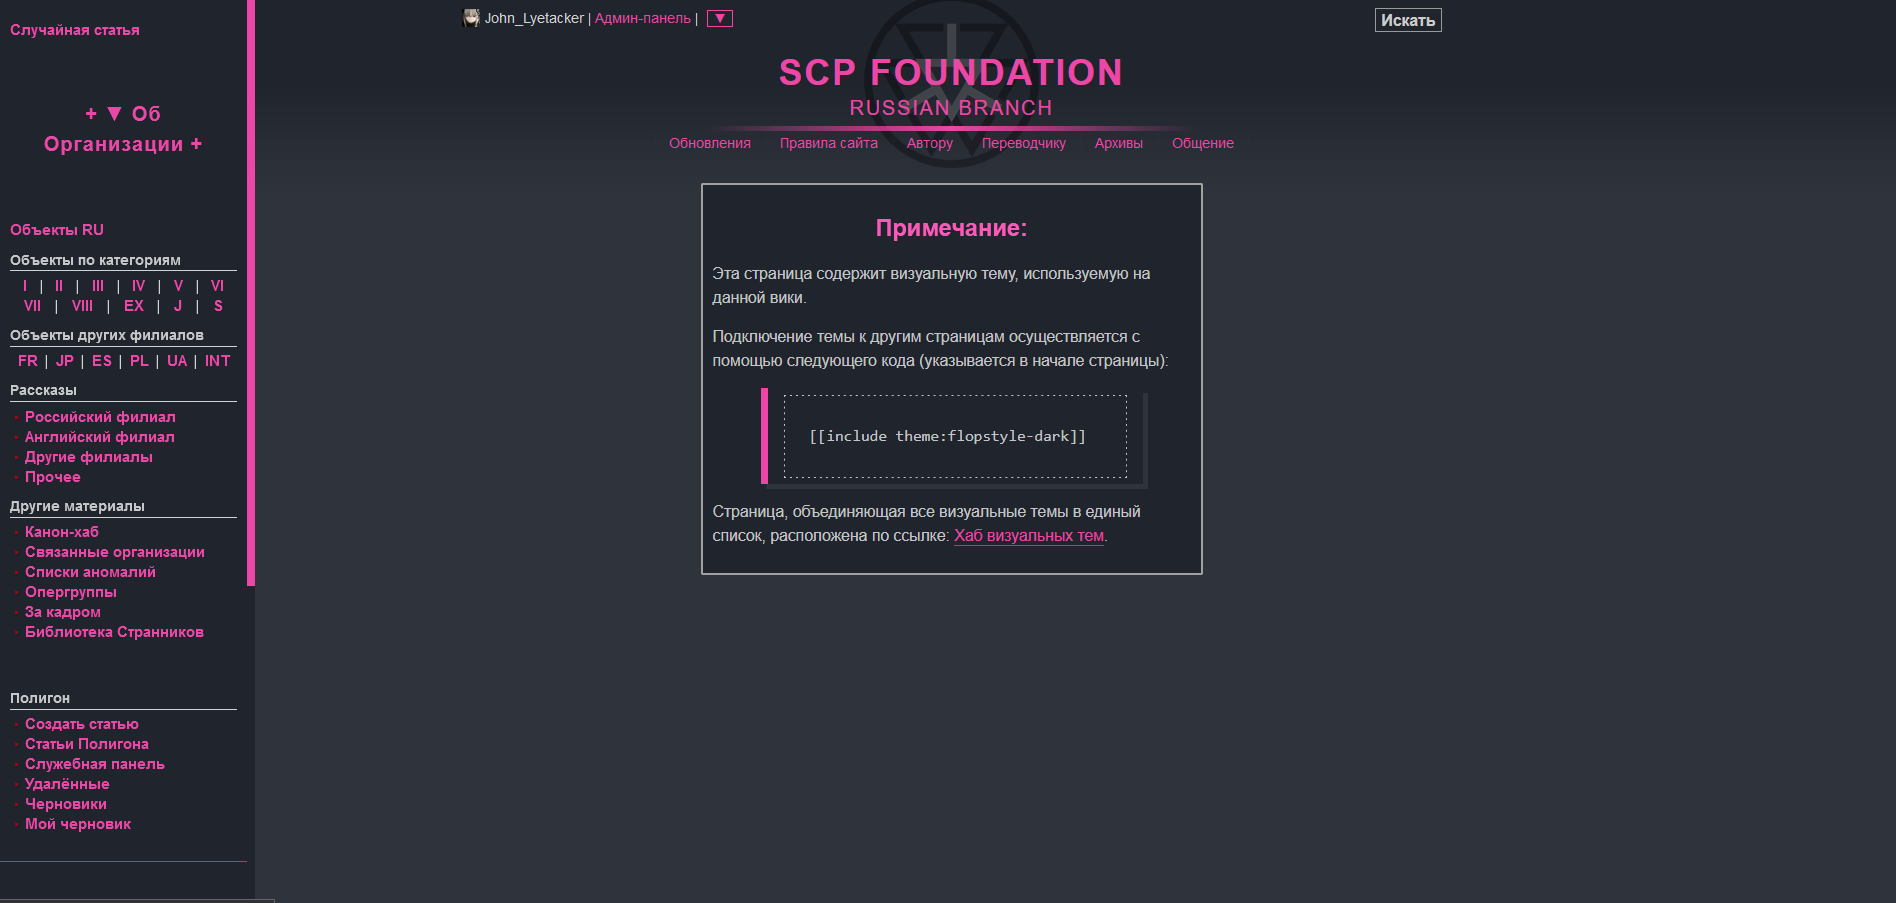 Flopstyle: DARK - SCP Foundation